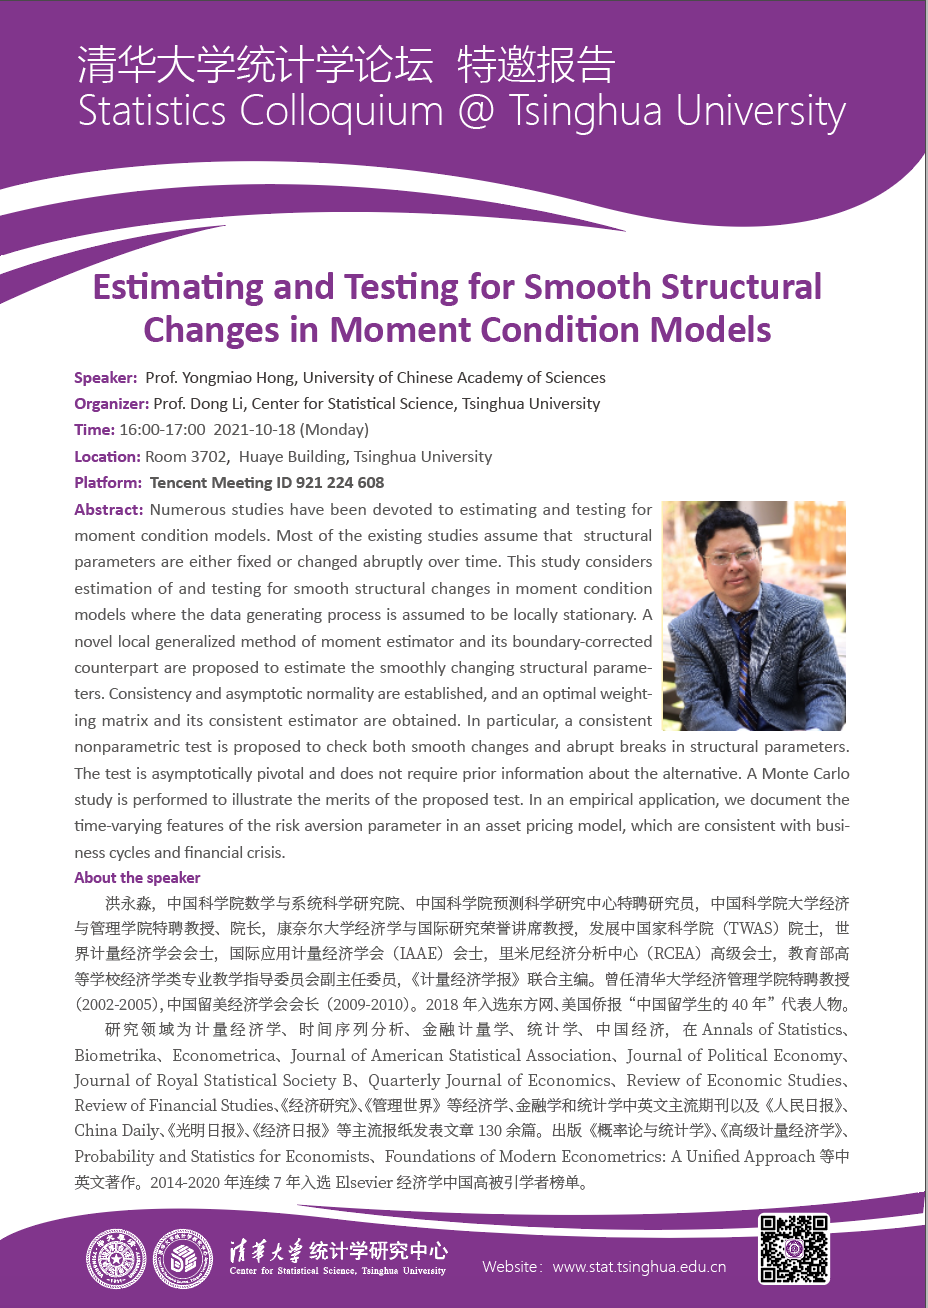 【统计学论坛】Estimating and Testing for Smooth Structural Changes in Moment Condition Models